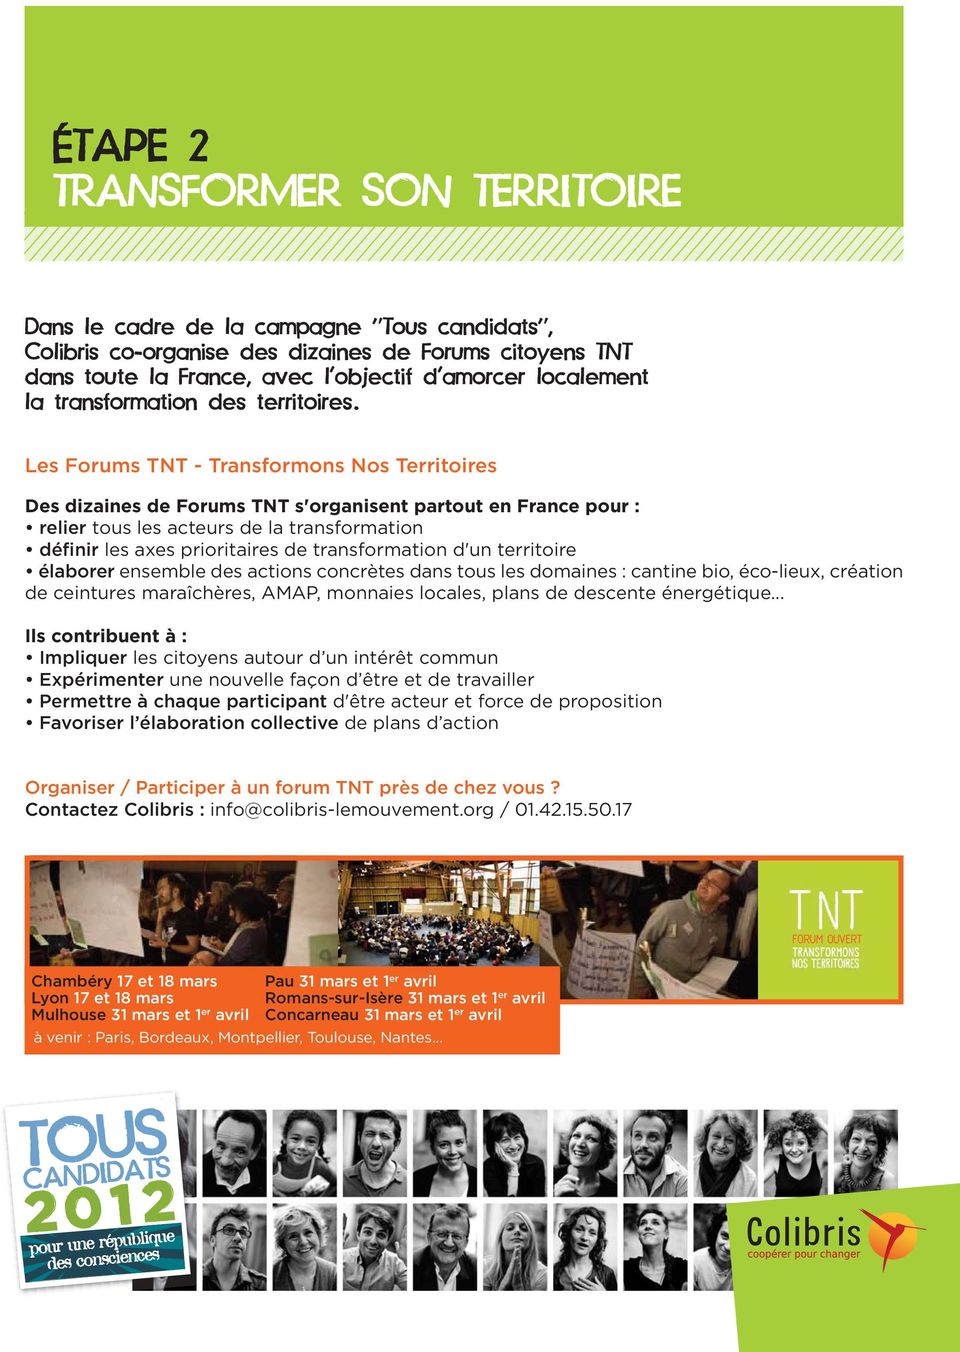 Les Forums TNT - Transformons Nos Territoires Des dizaines de Forums TNT s'organisent partout en France pour : relier tous les acteurs de la transformation définir les axes prioritaires de